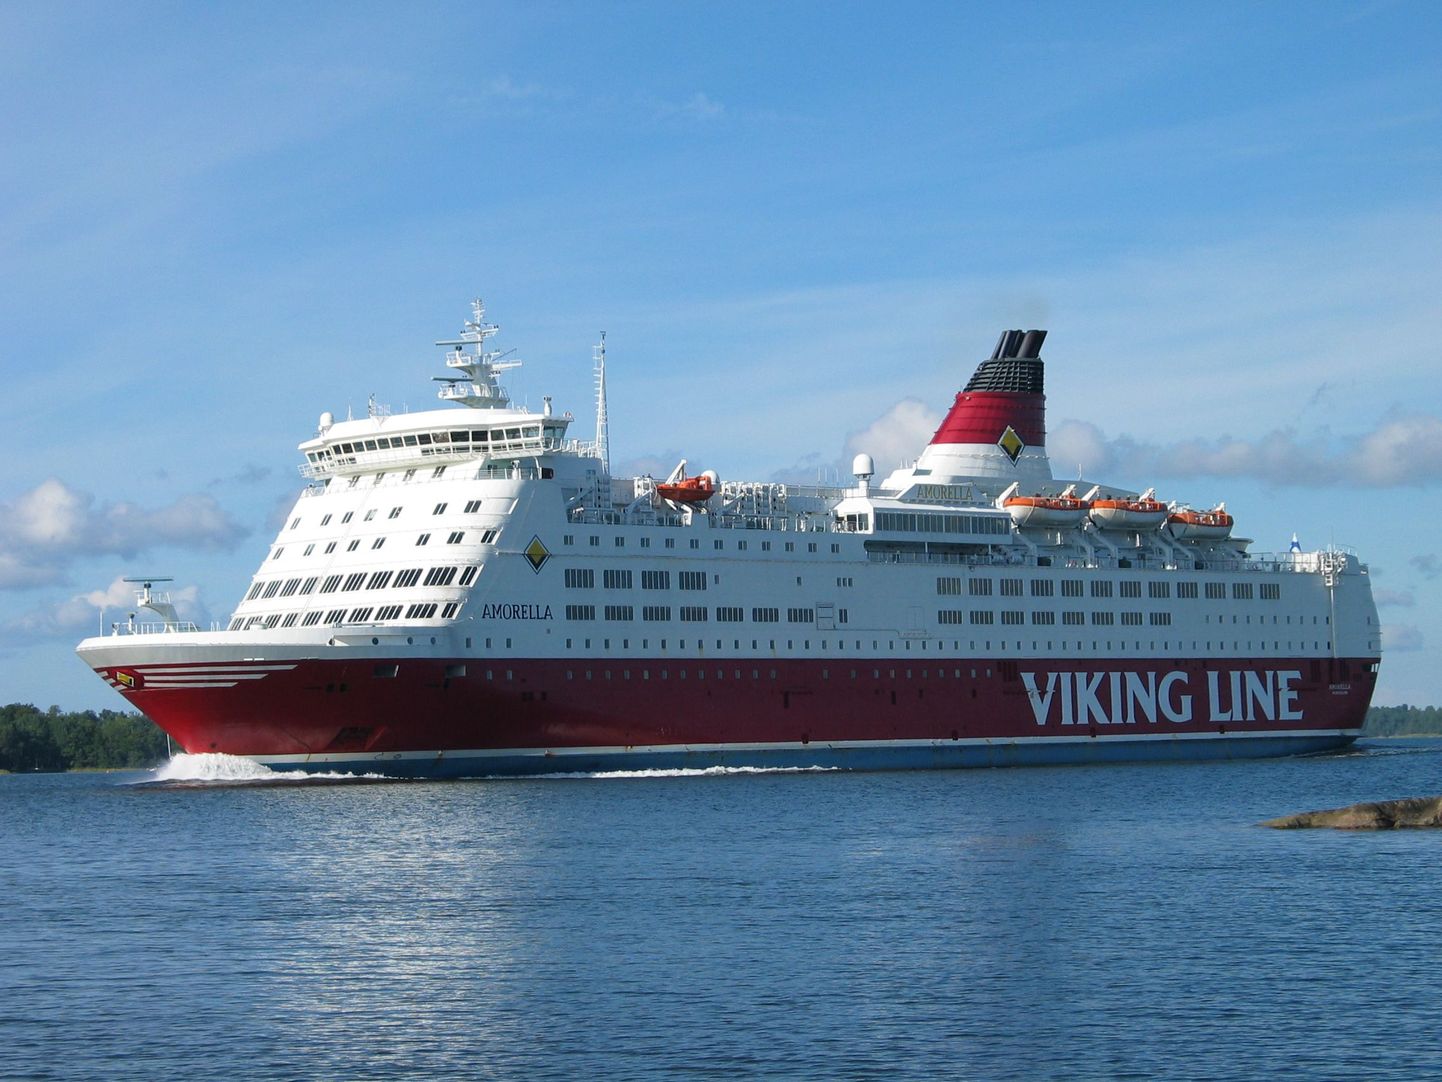 Viking Line'i Amorella, mis kurseerib Turu-Stockholmi liinil.